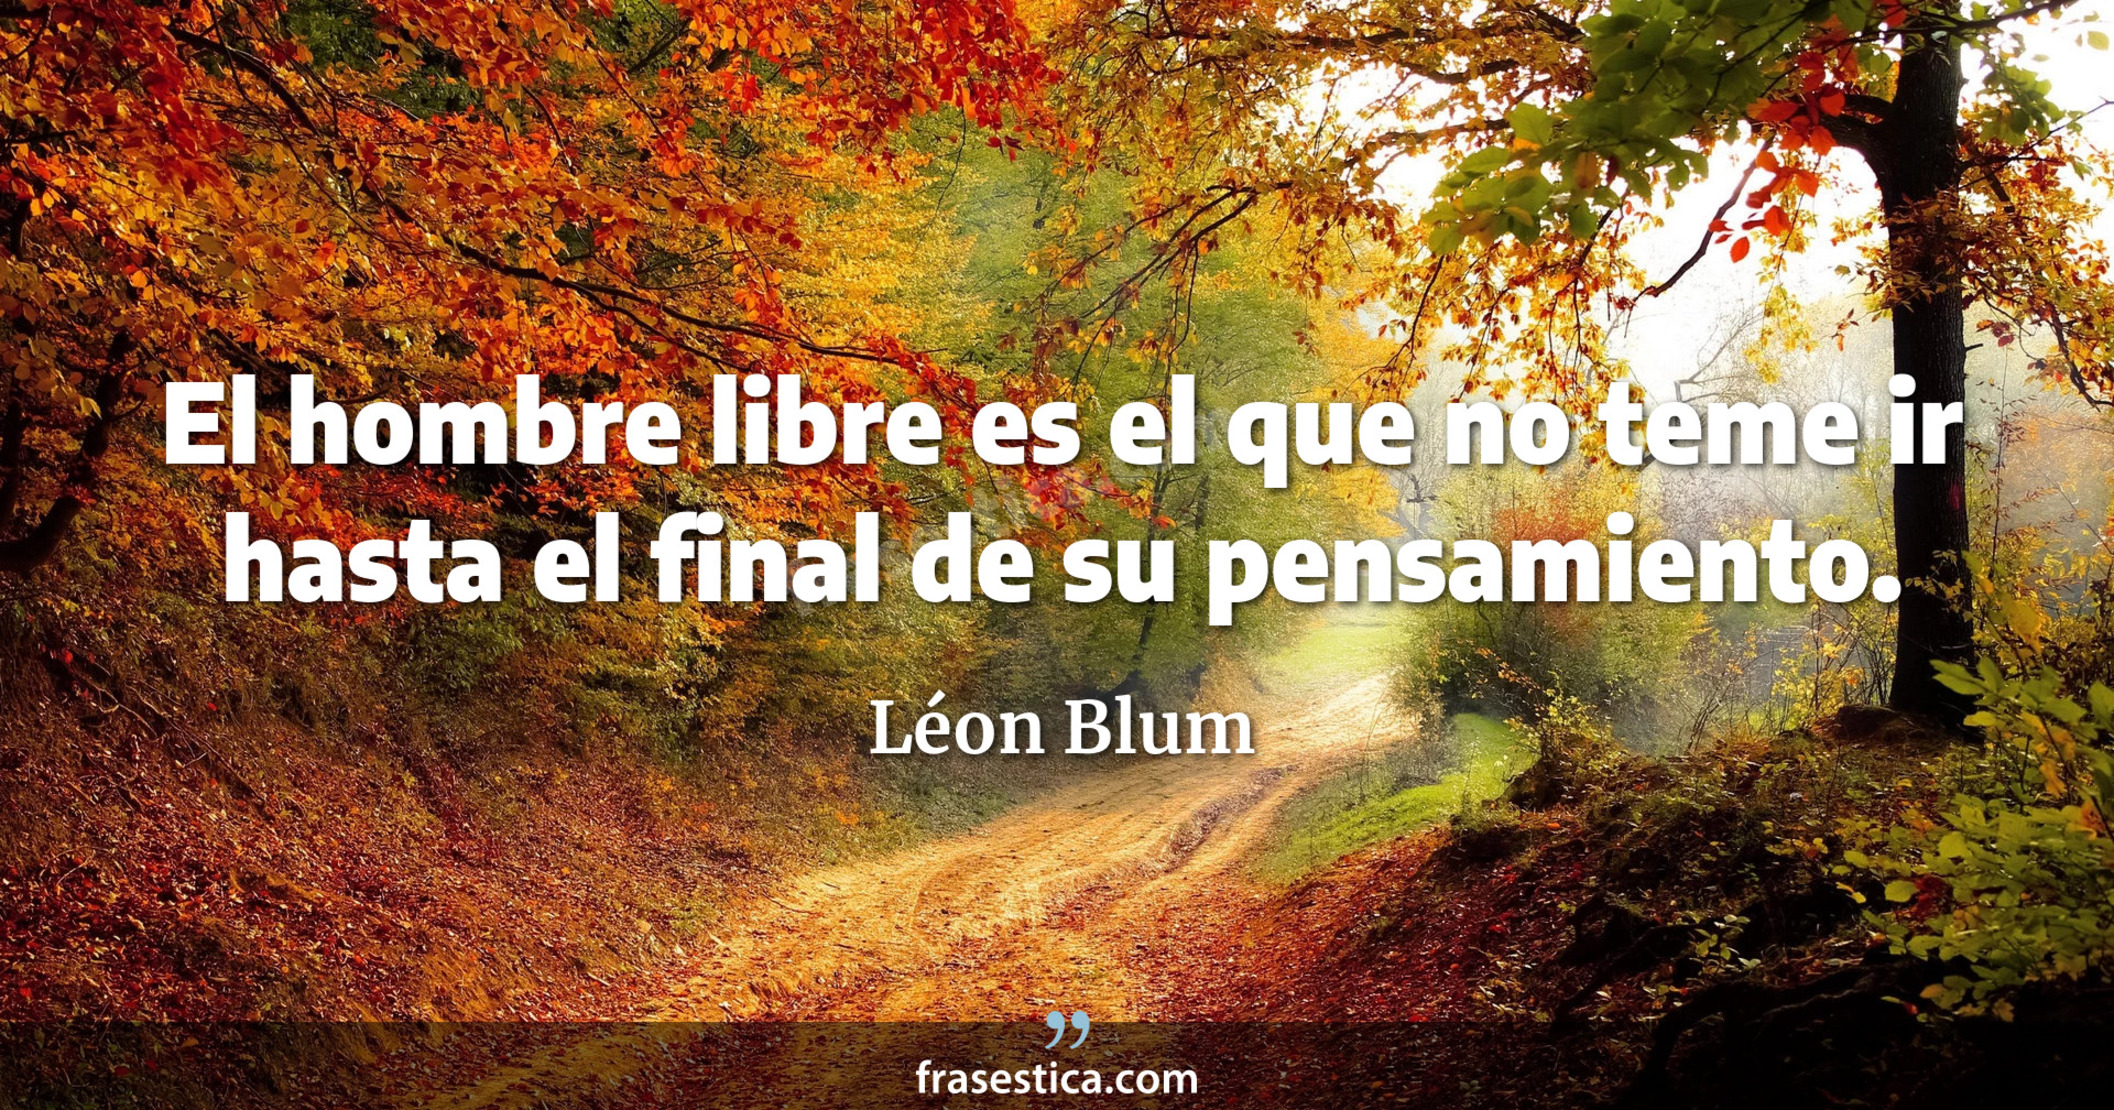 El hombre libre es el que no teme ir hasta el final de su pensamiento. - Léon Blum